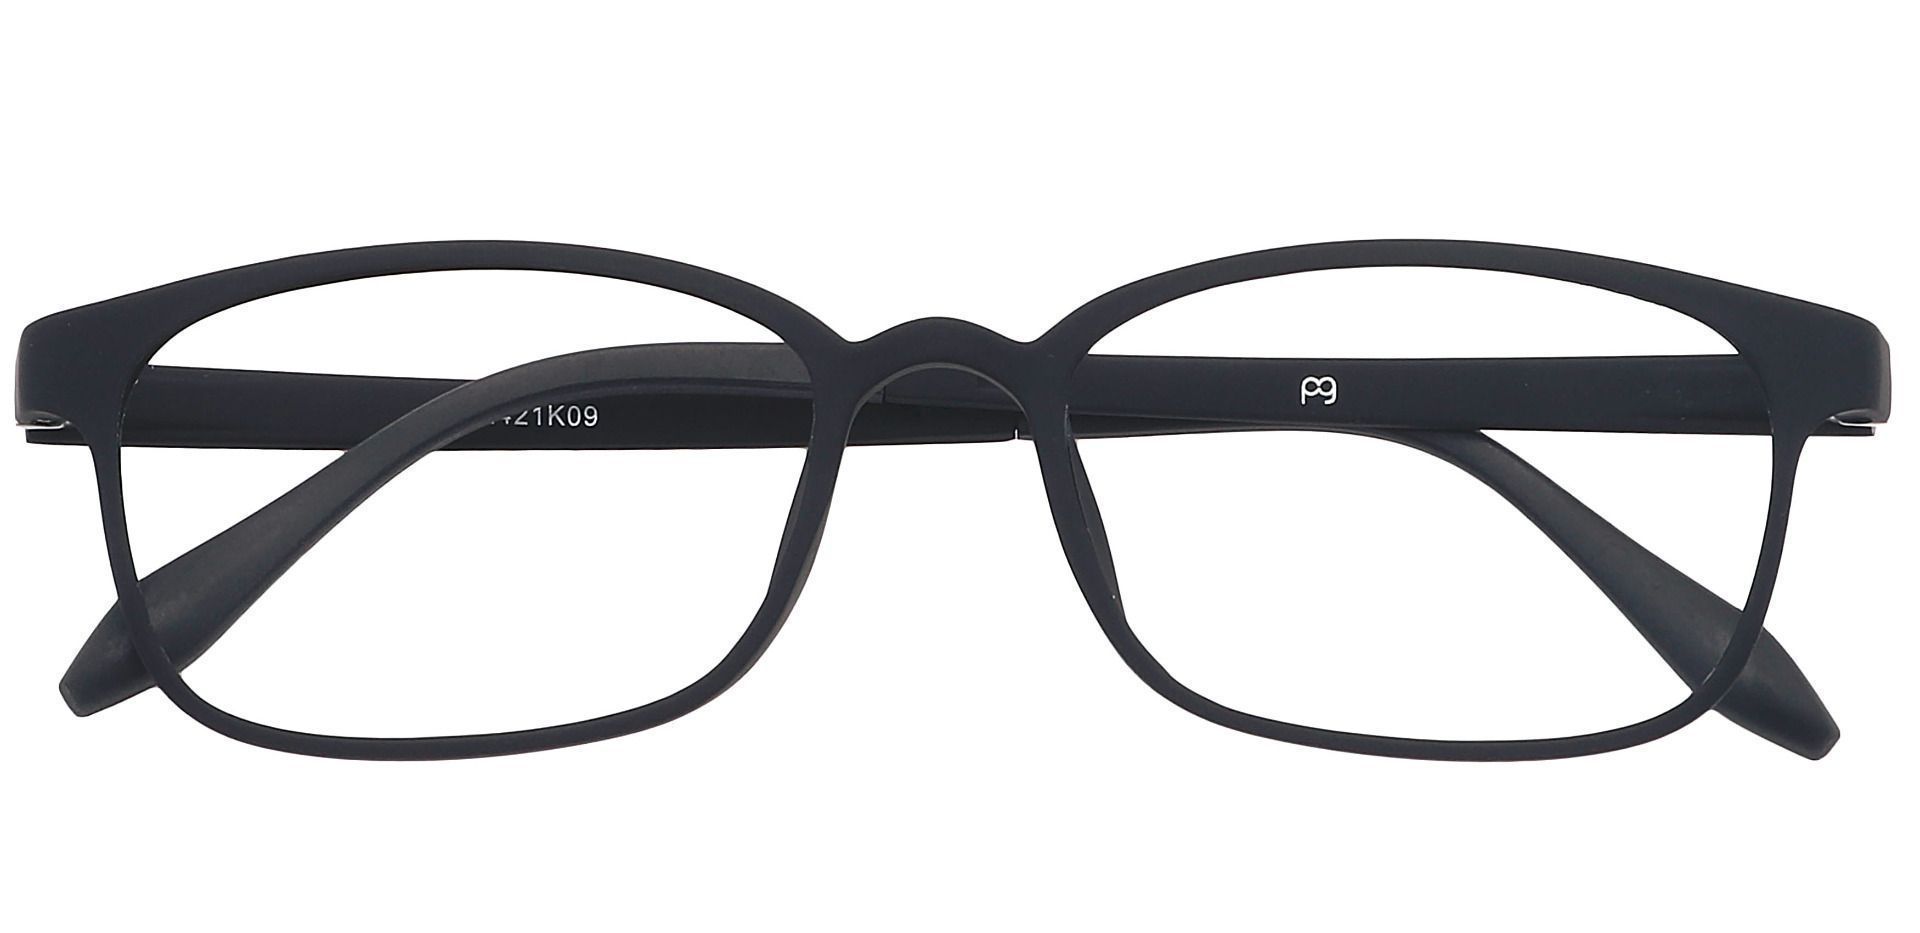 Mercer Rectangle Eyeglasses Frame - Matte Black